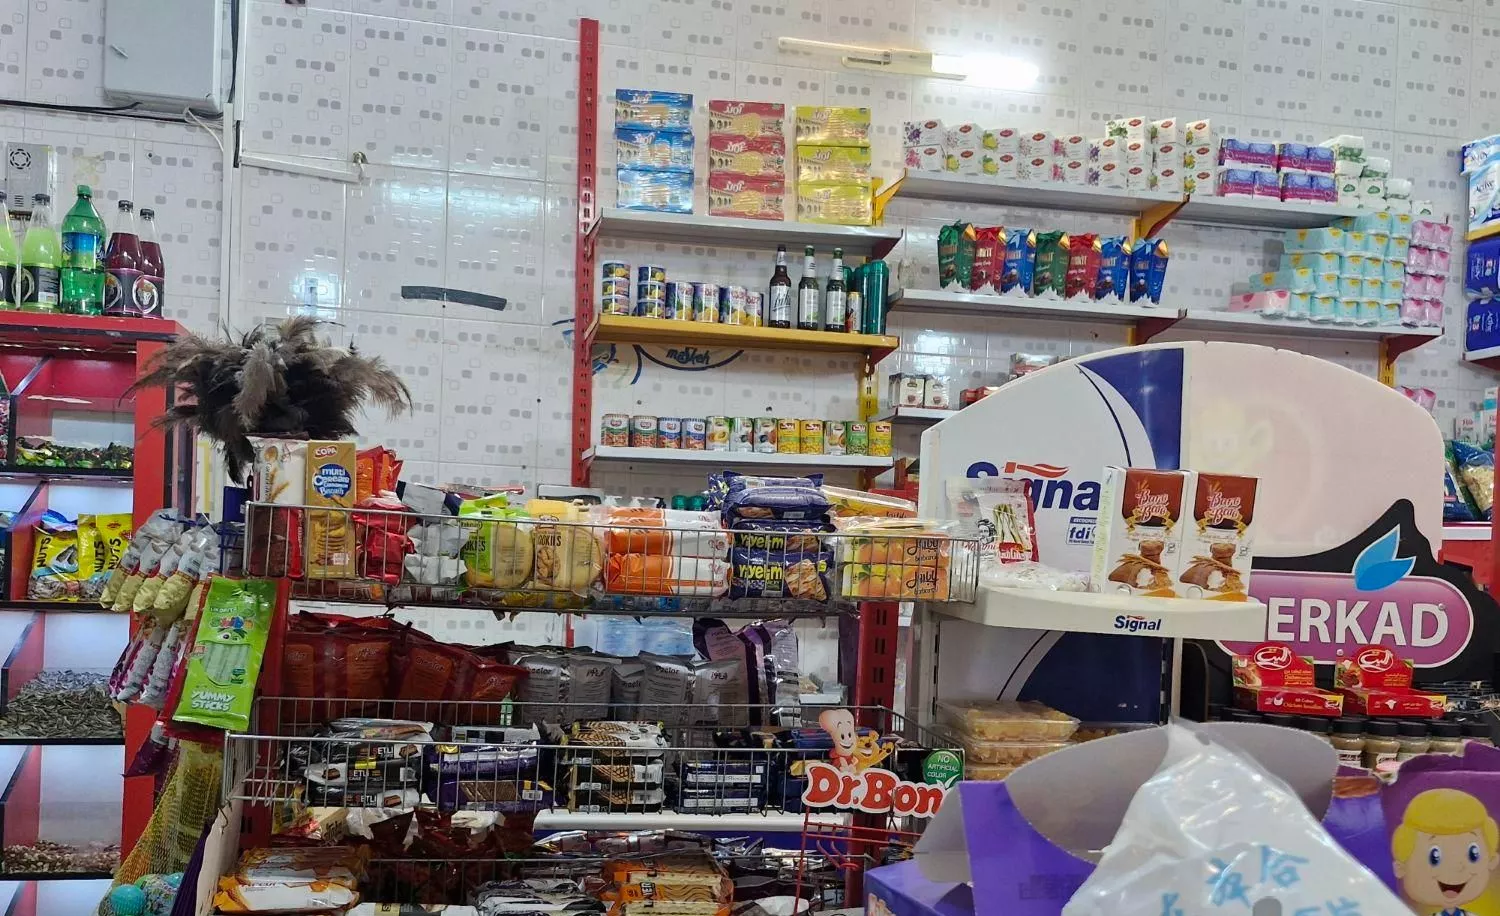 واگزاریه مغازه سوپری واقع در غزالی